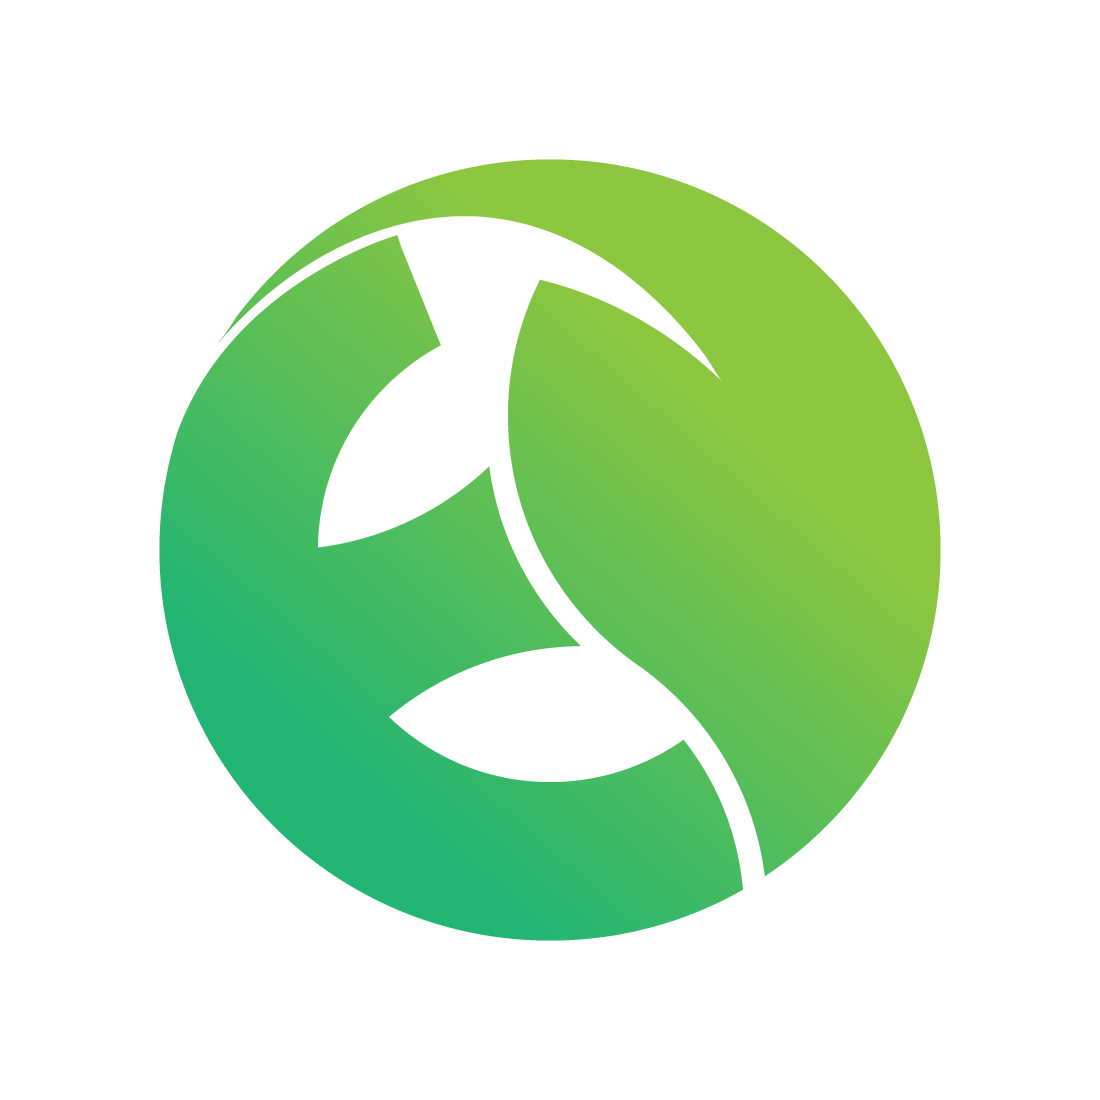 Eco E with fresh leaf logo design preview image.